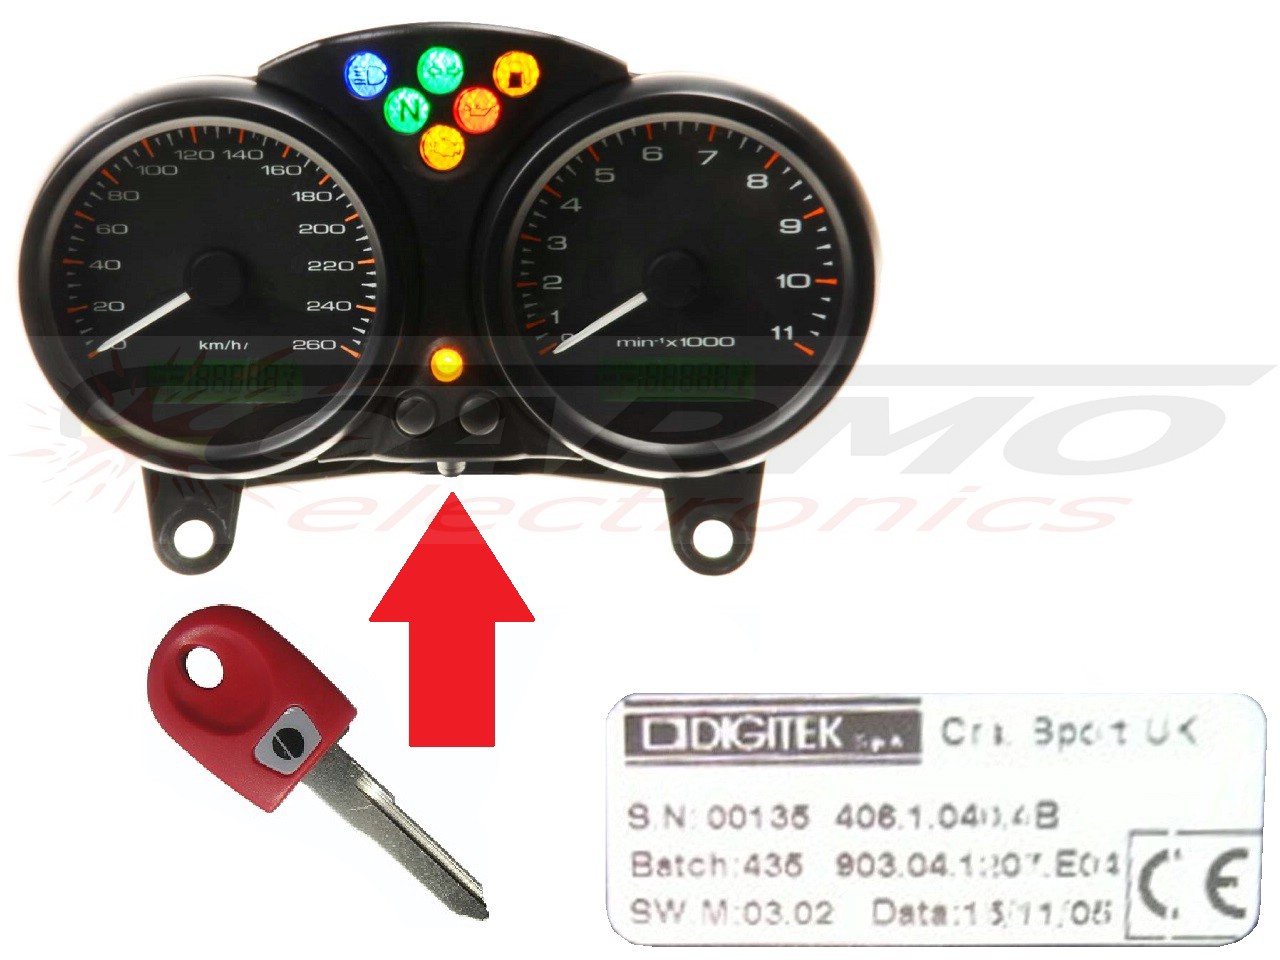 Chip chiave per centralina Ducati x1 → DIGITEK - Clicca l'immagine per chiudere